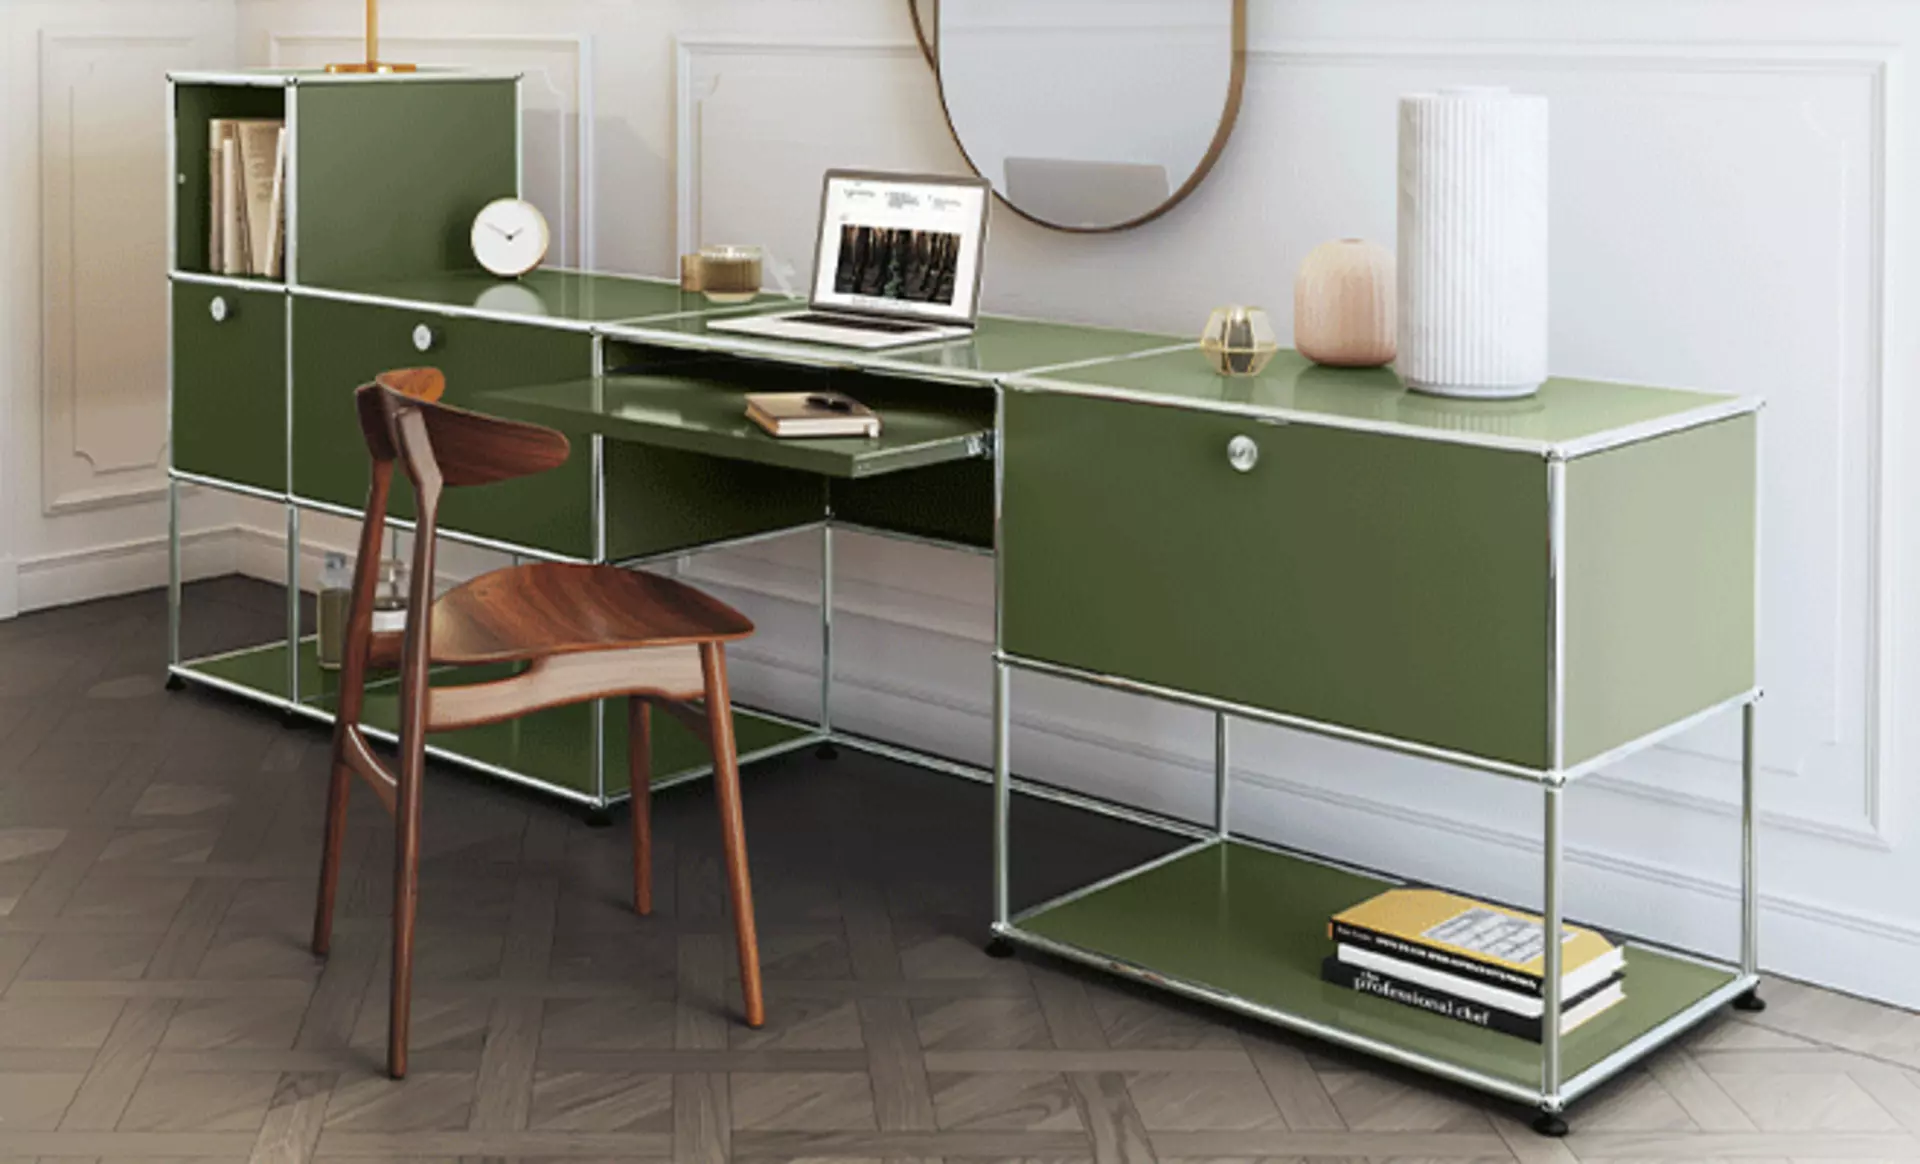 Nutzbar als Schreibtisch, Schminktisch und mehr - USM Kastenmöbel in Olivgrün sind zeitlose Allrounder